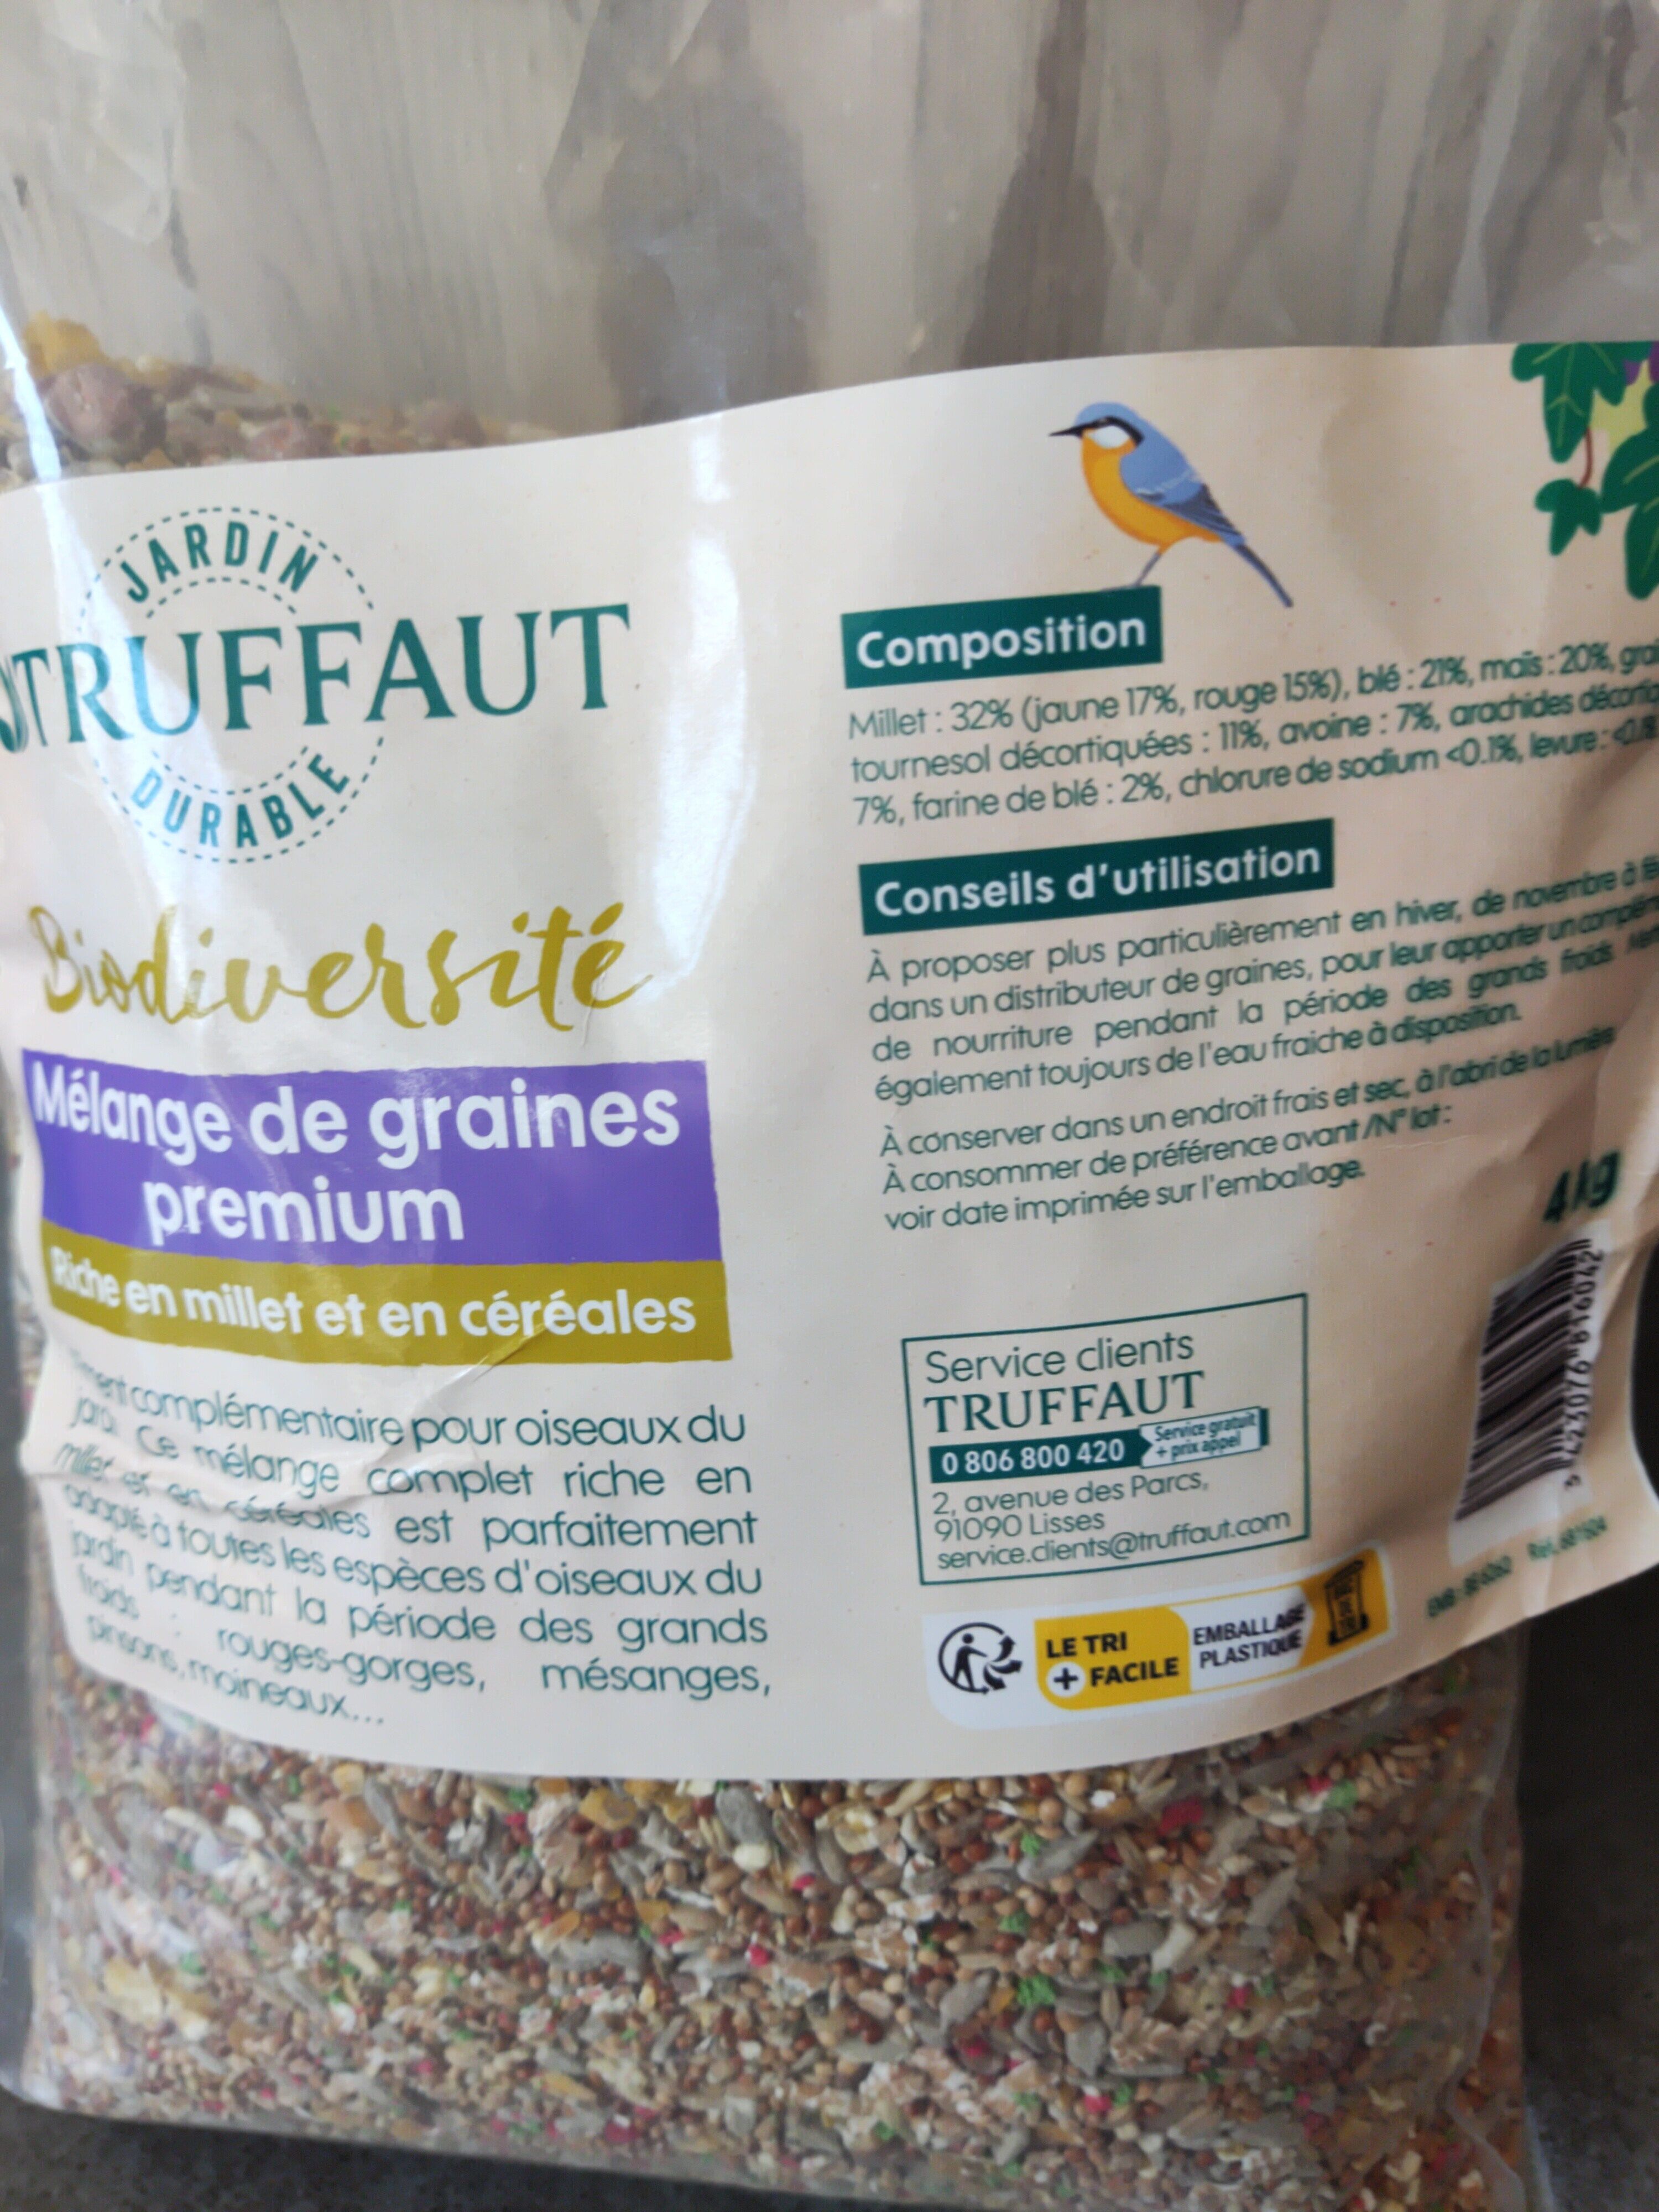 mélange de graines premium - Product - fr